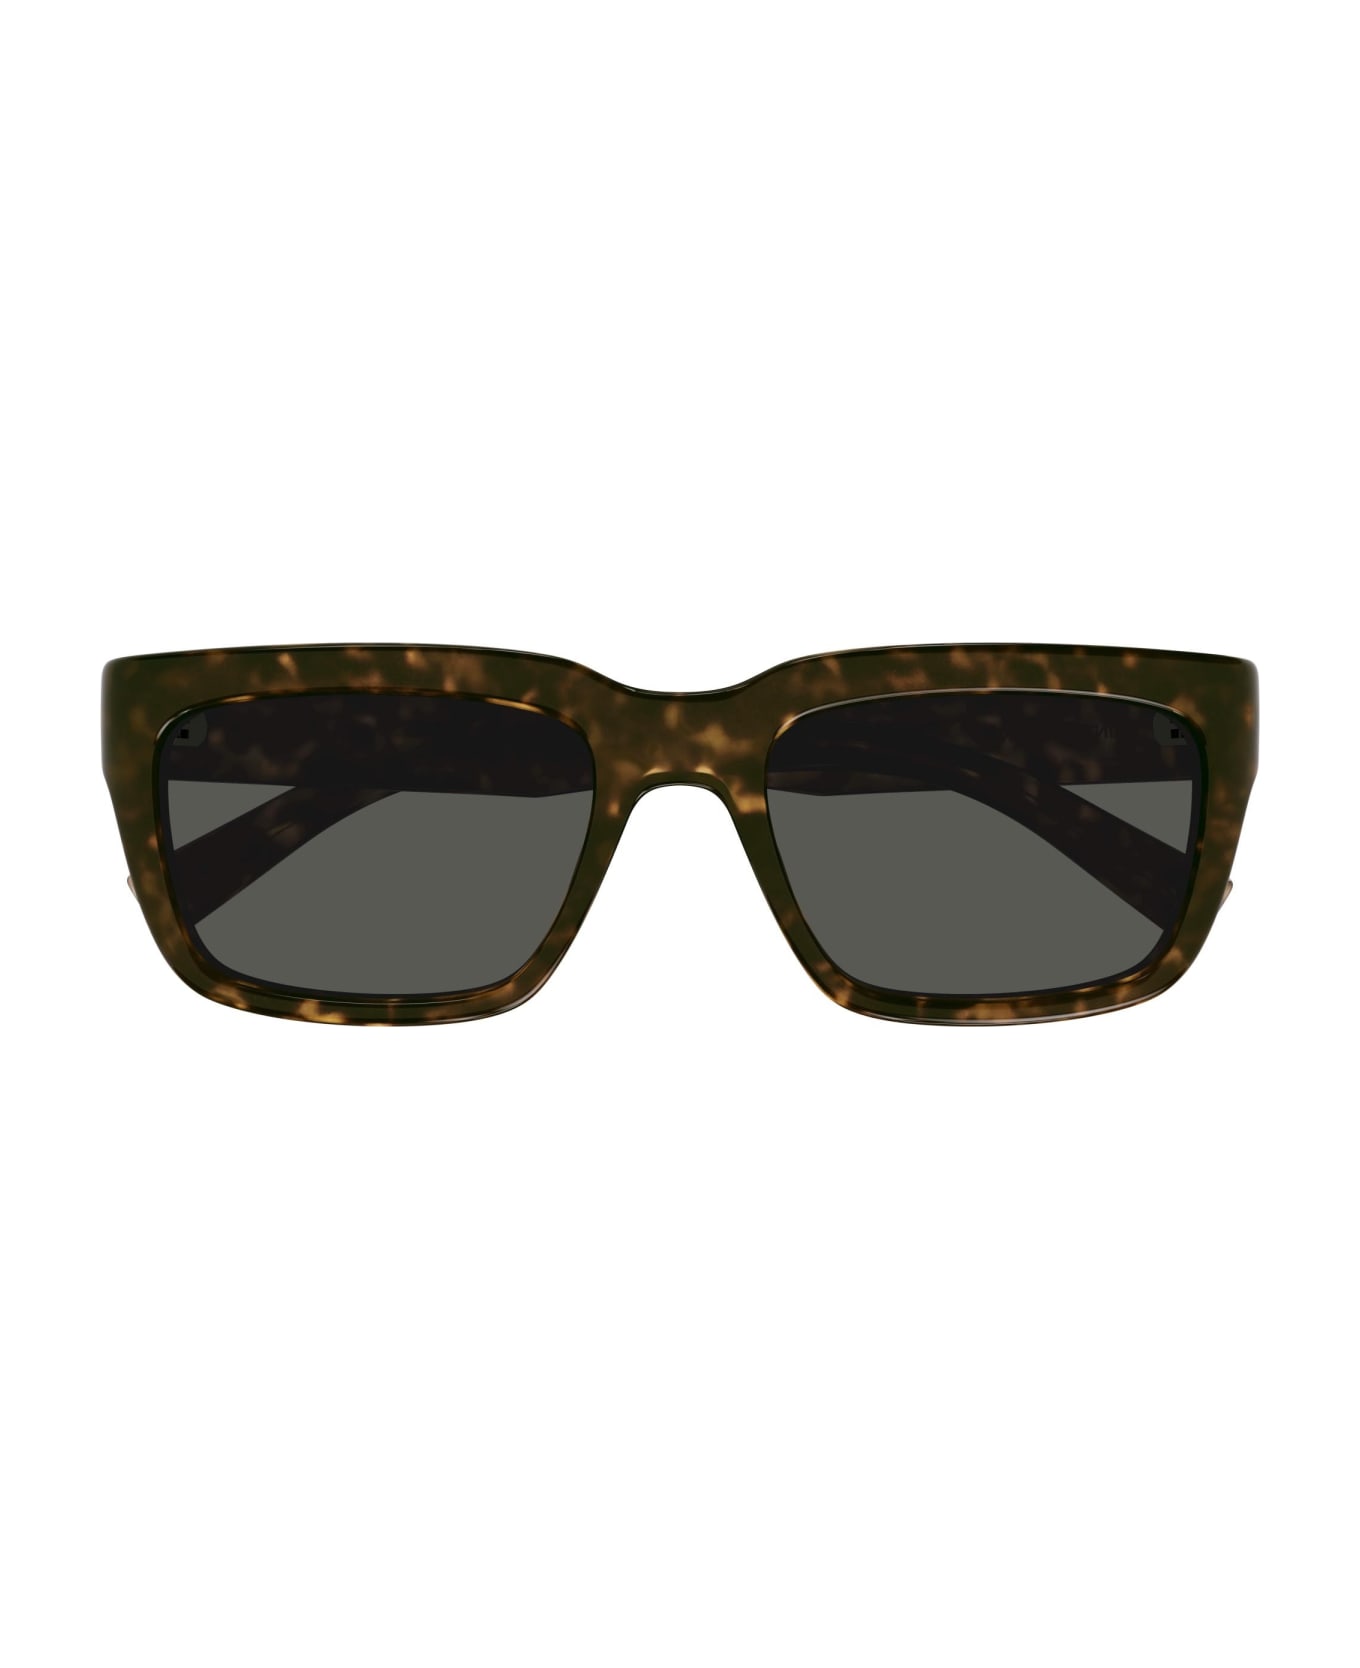 Saint Laurent Eyewear Sunglasses - Havana/Grigio